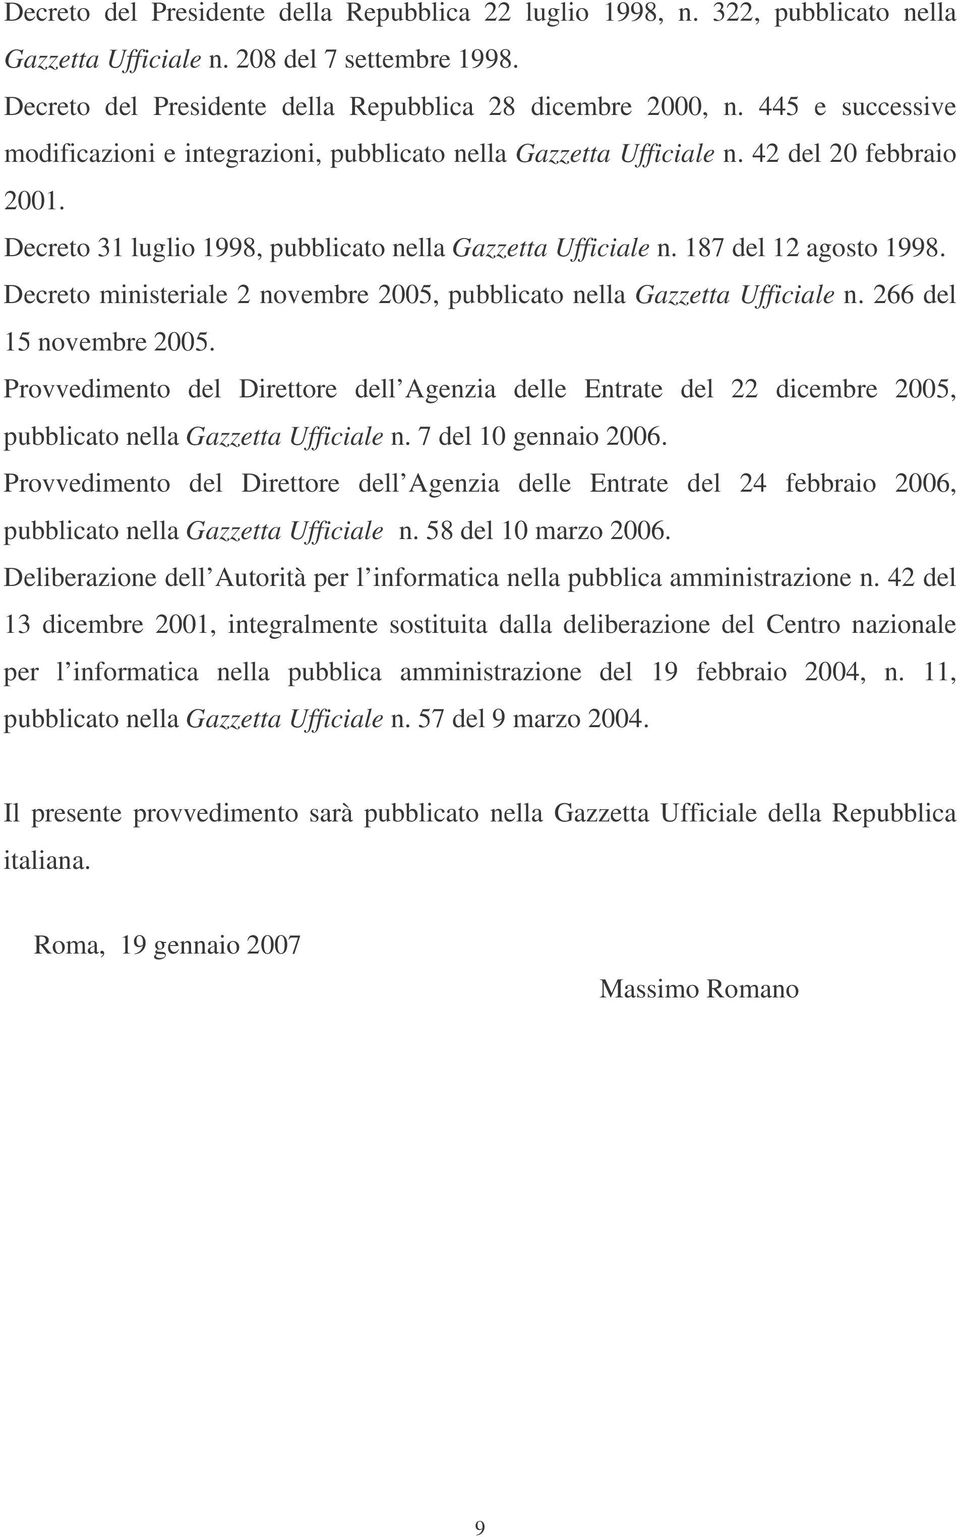 Decreto ministeriale 2 novembre 2005, pubblicato nella Gazzetta Ufficiale n. 266 del 15 novembre 2005.